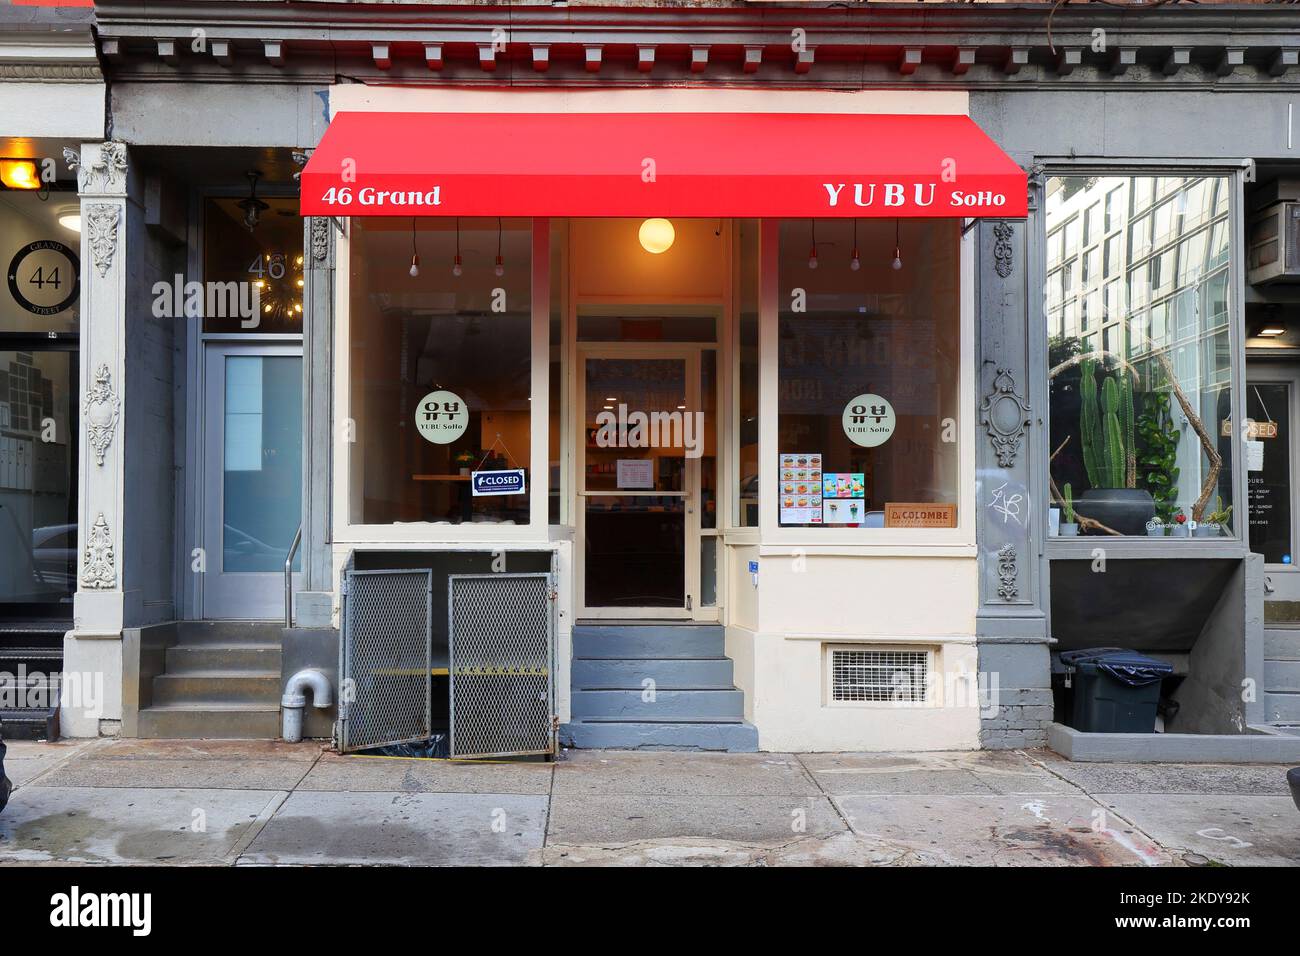 Yubu 유부, 46 Grand St, New York, NYC Foto von einem koreanischen Tofu-Taschenrestaurant im Stadtteil SoHo in Manhattan. Stockfoto